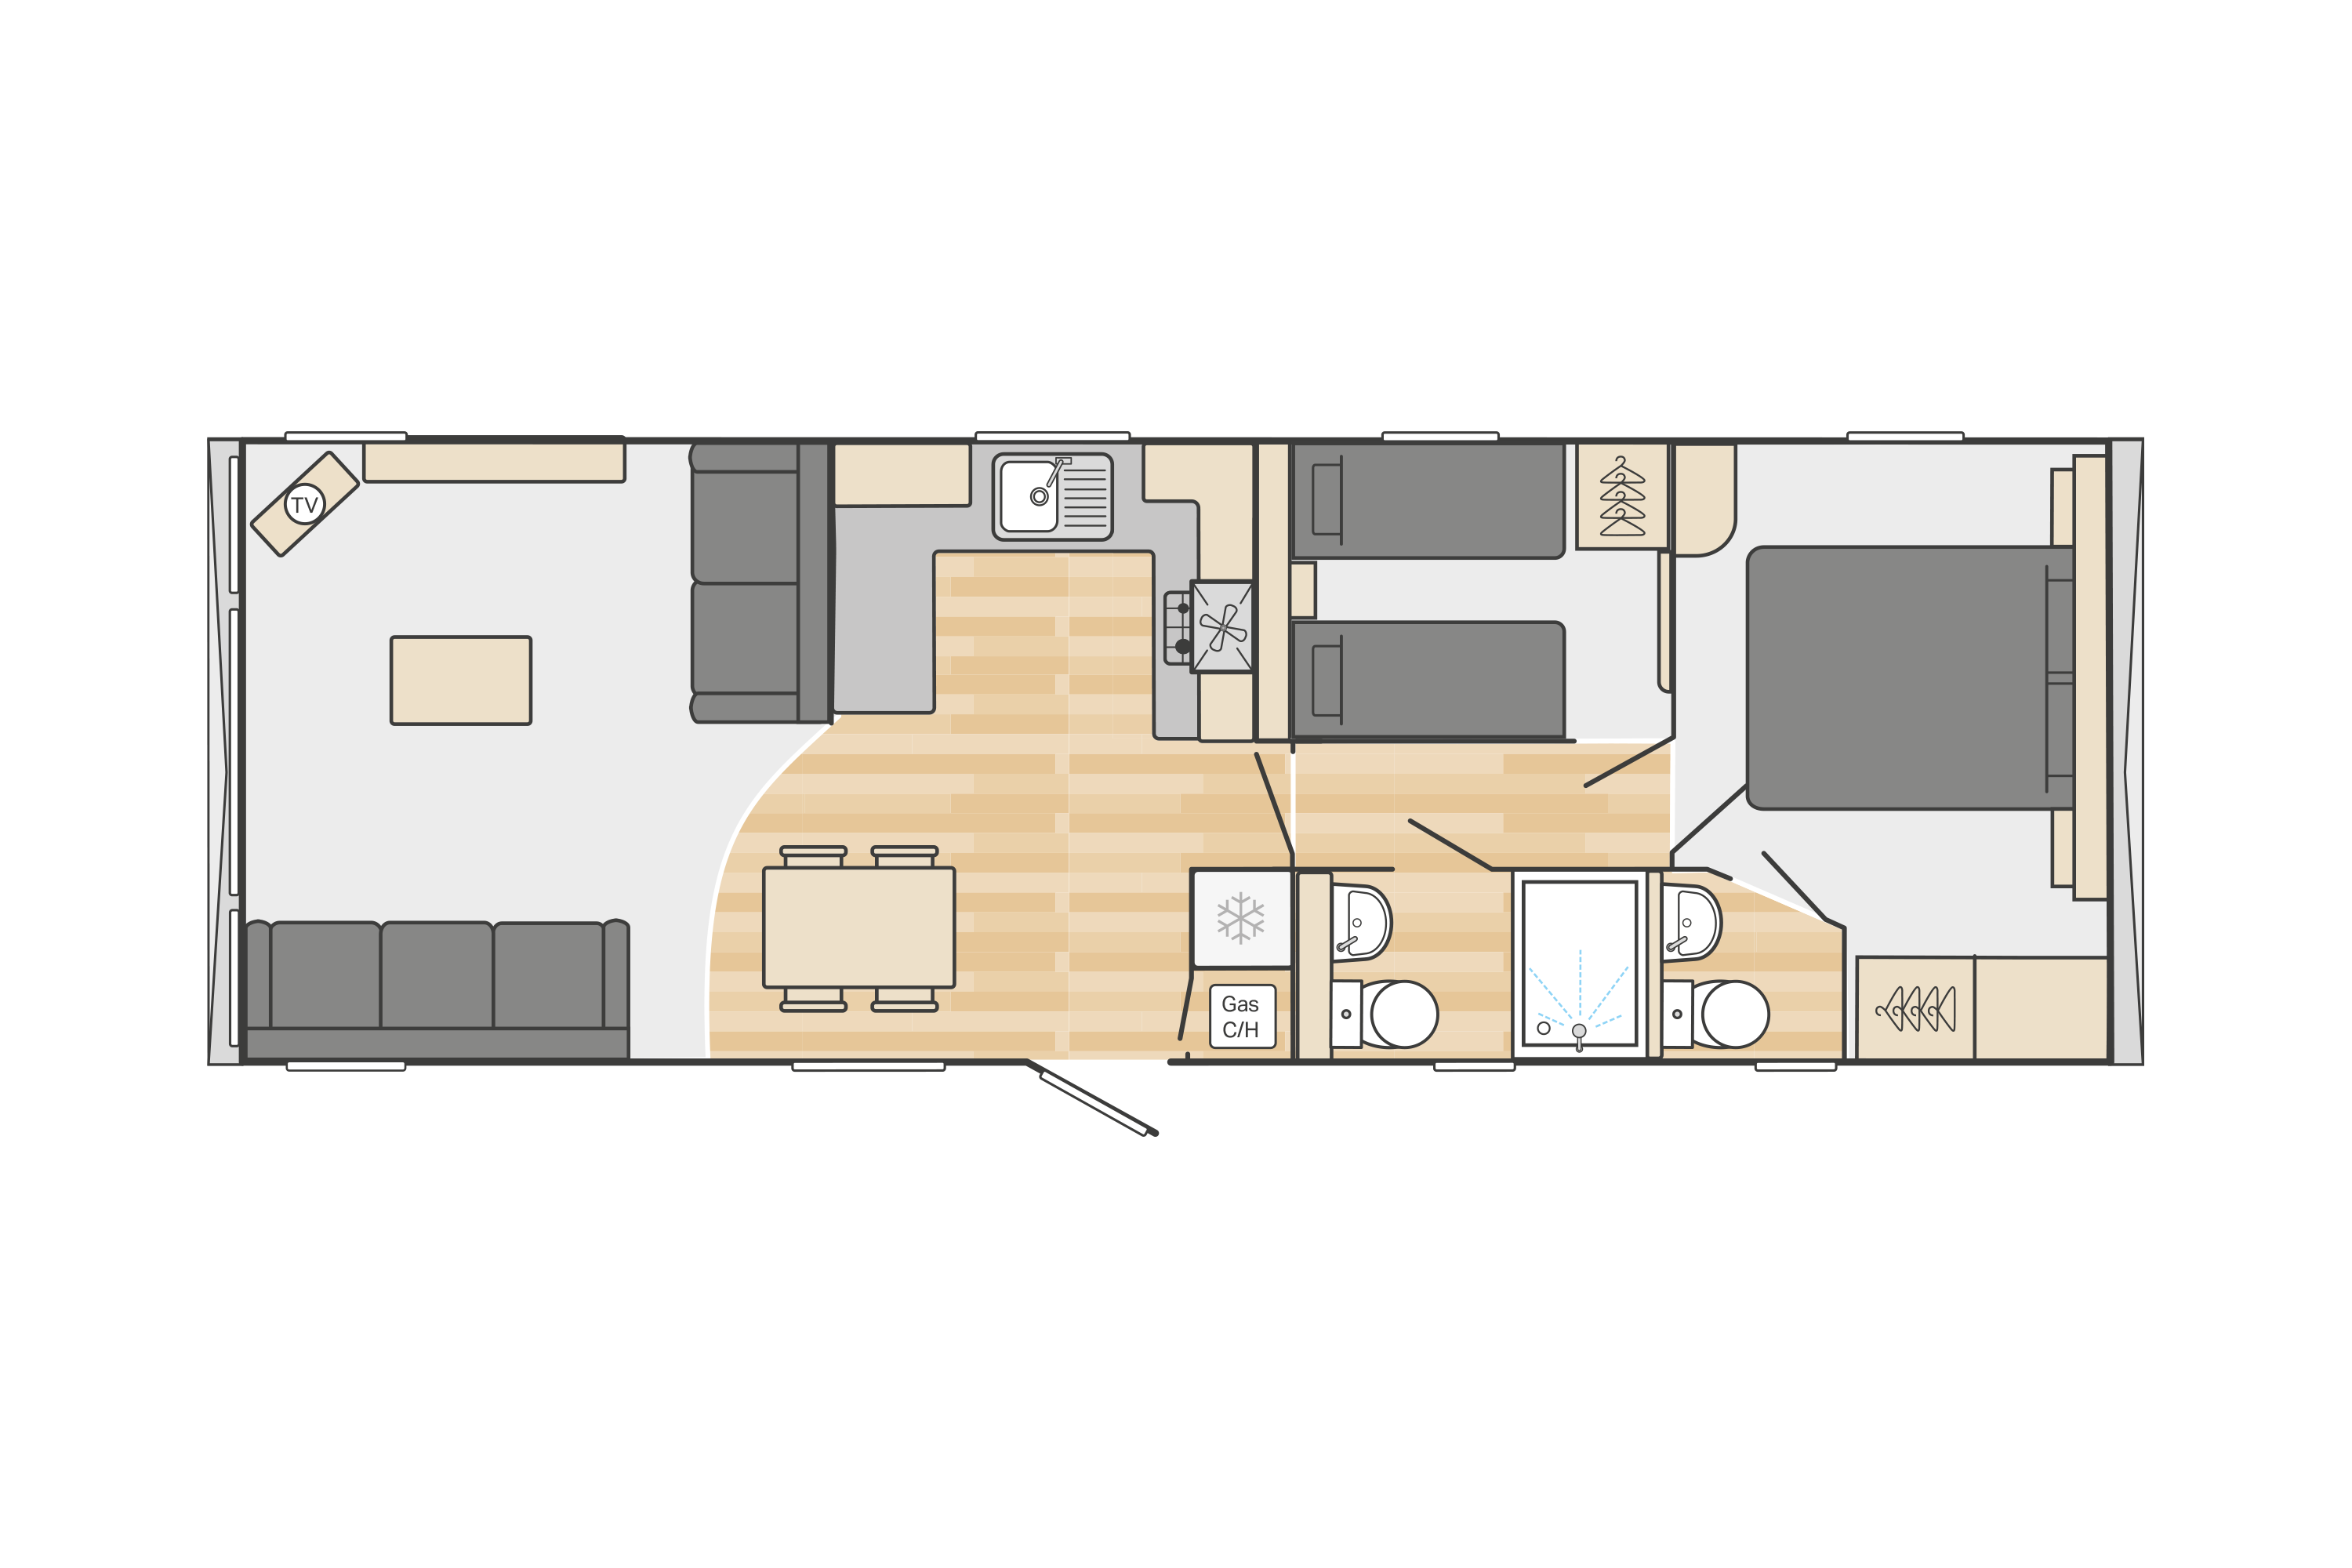 Bordeaux 35' x 12' 2 Bedroom floorplan